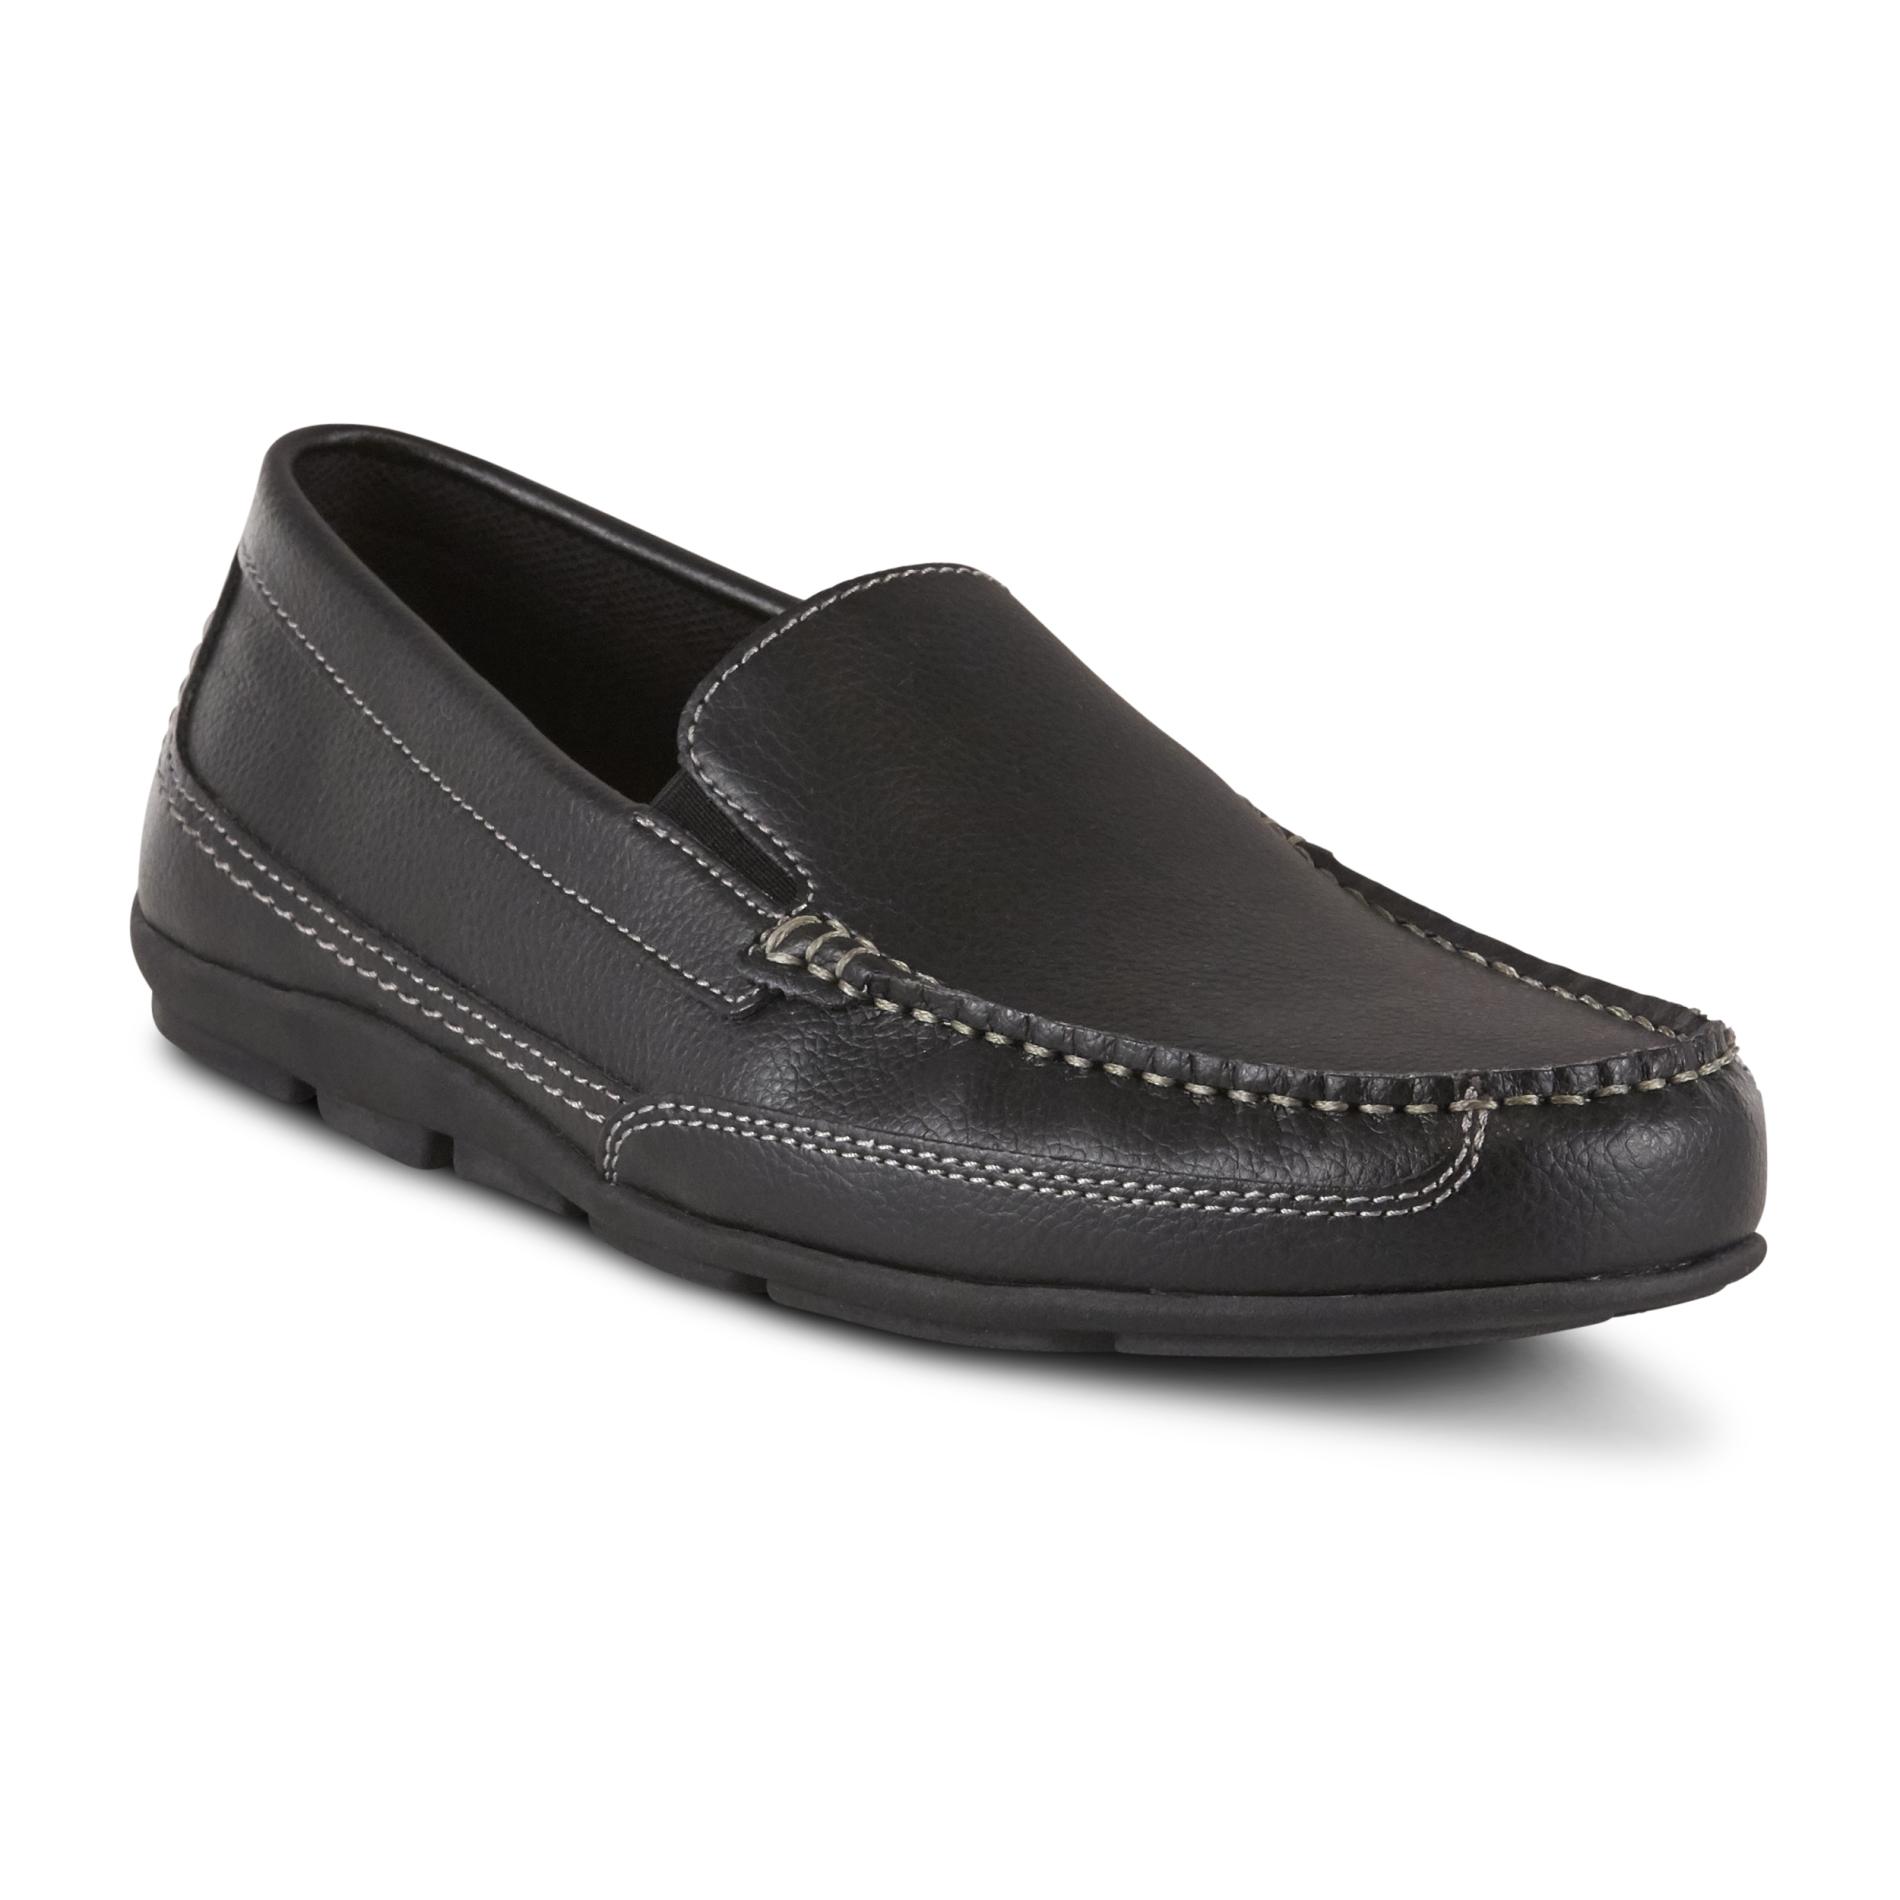 Men's Casual Shoes - Kmart